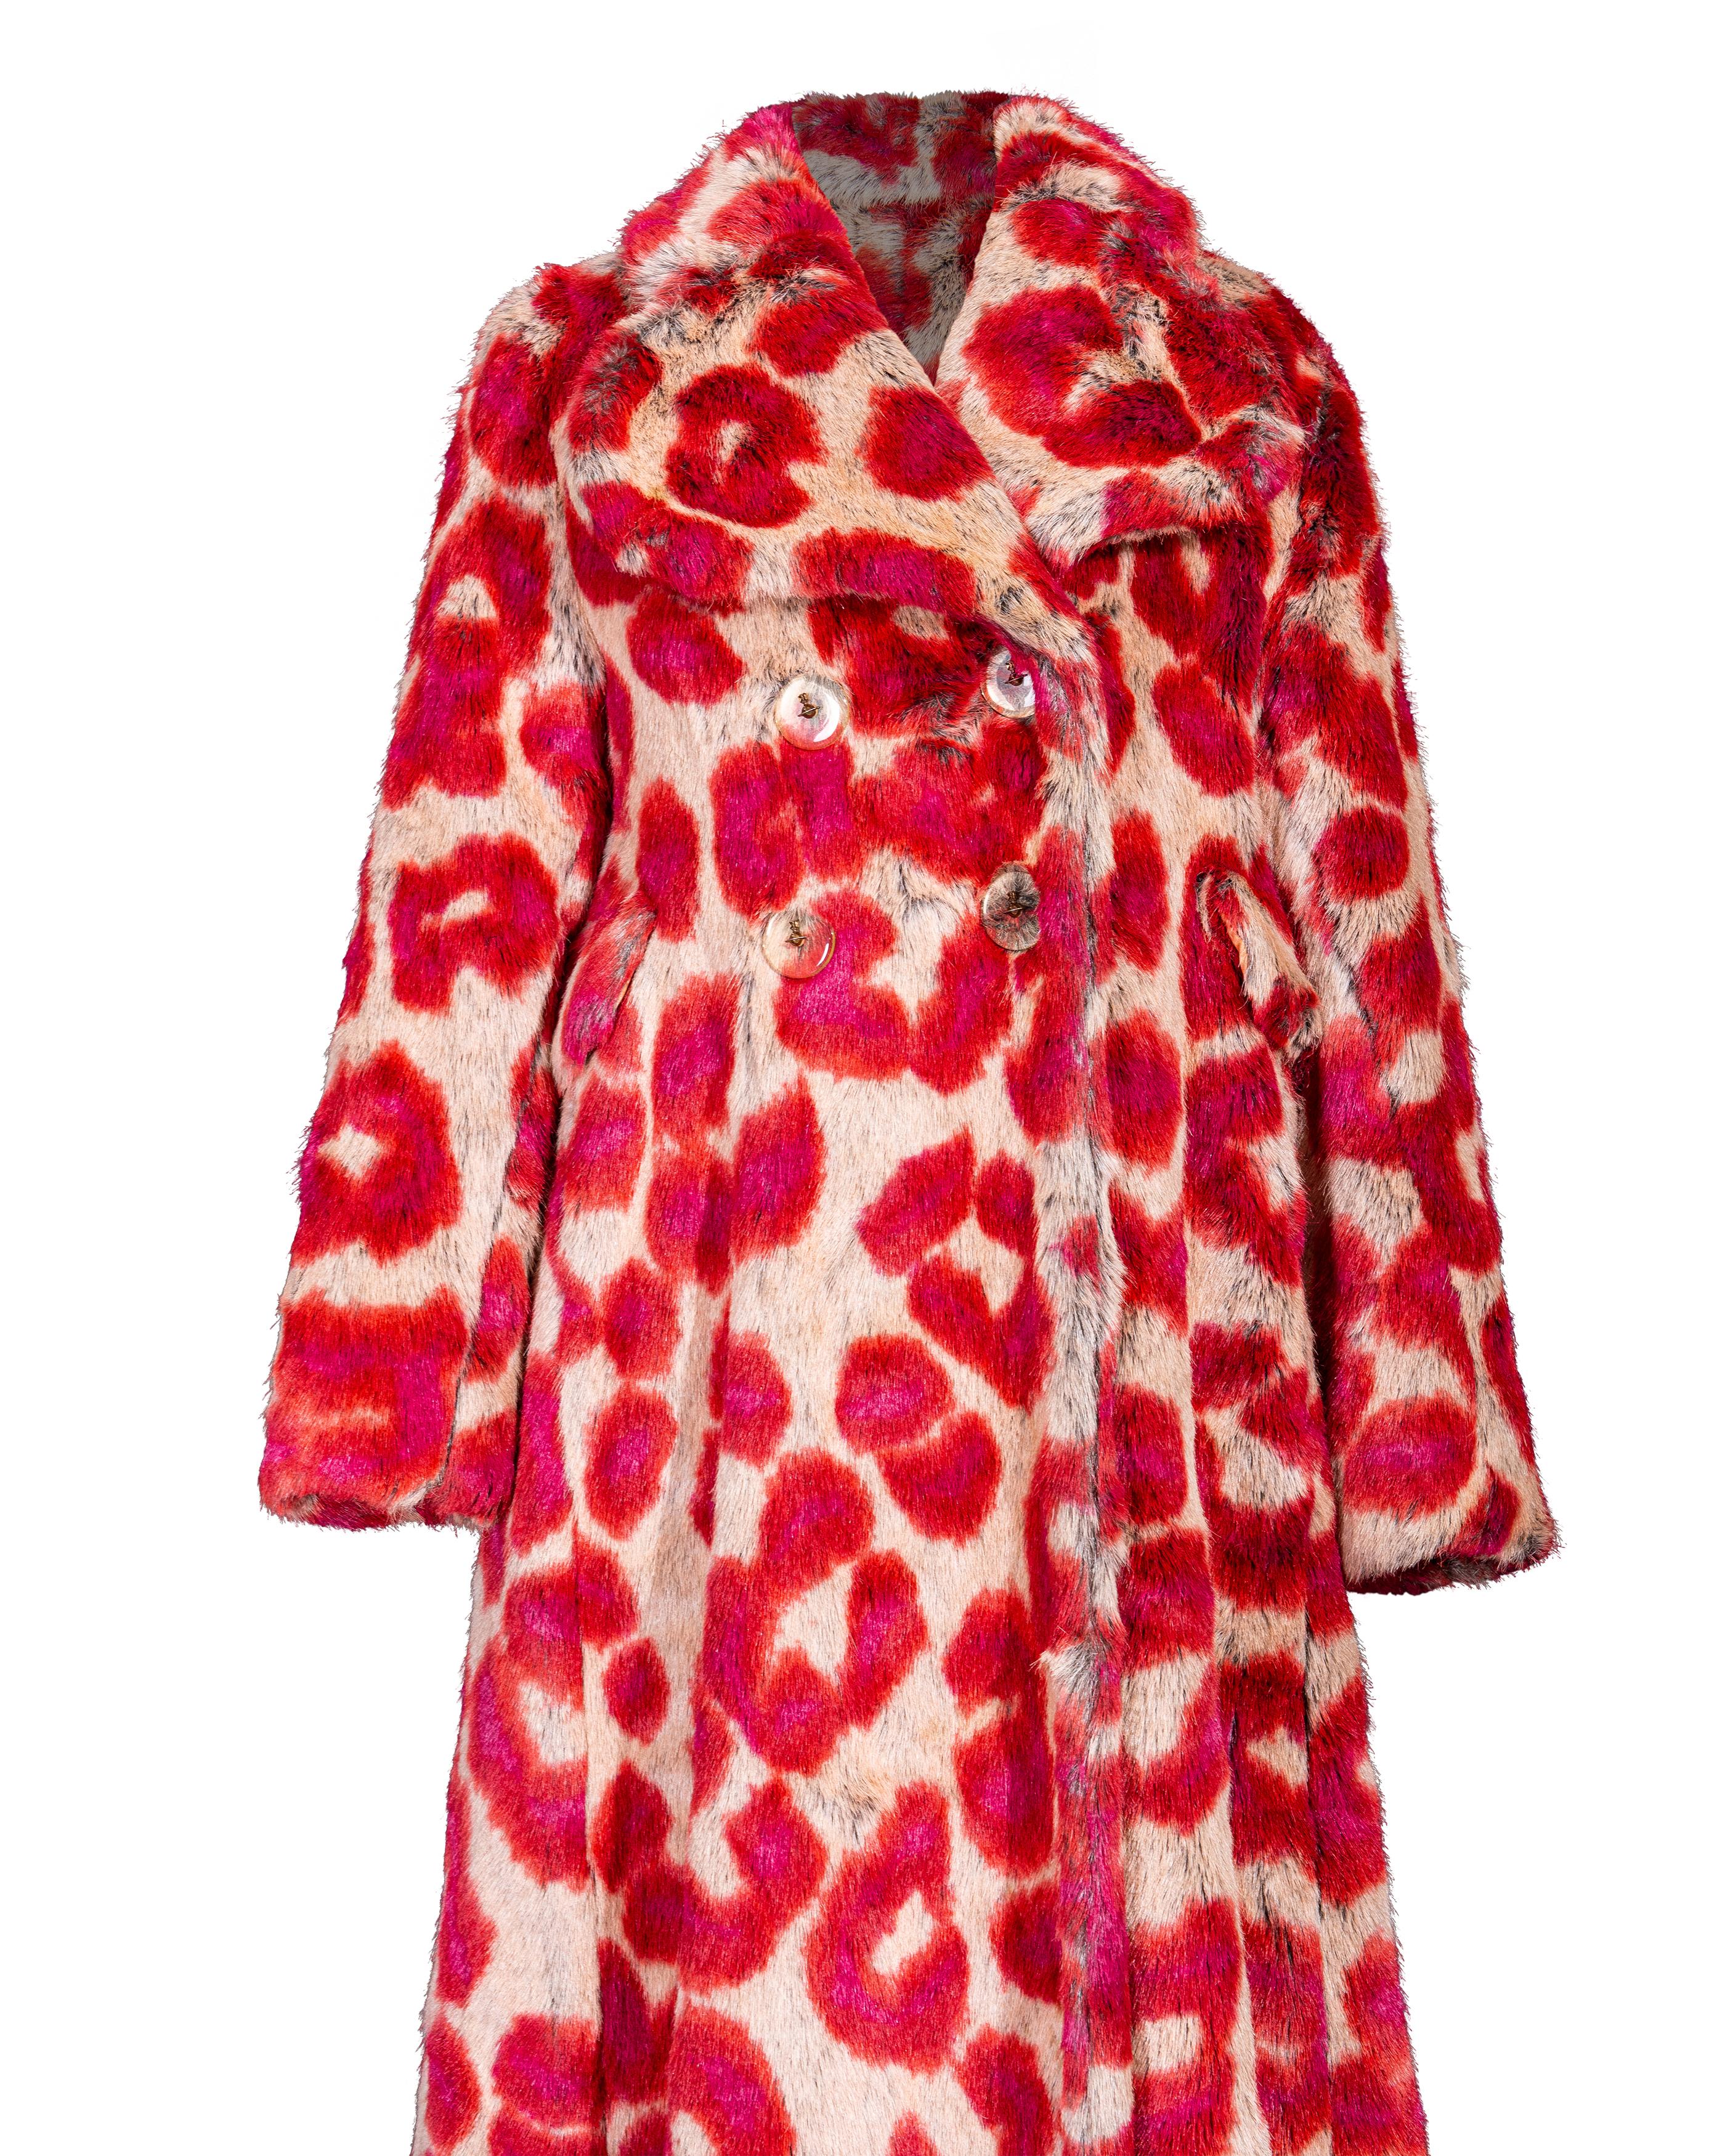 A/W 1992 Vivienne Westwood Faux Fur Leopard Print Coat and Glove Set For Sale 4